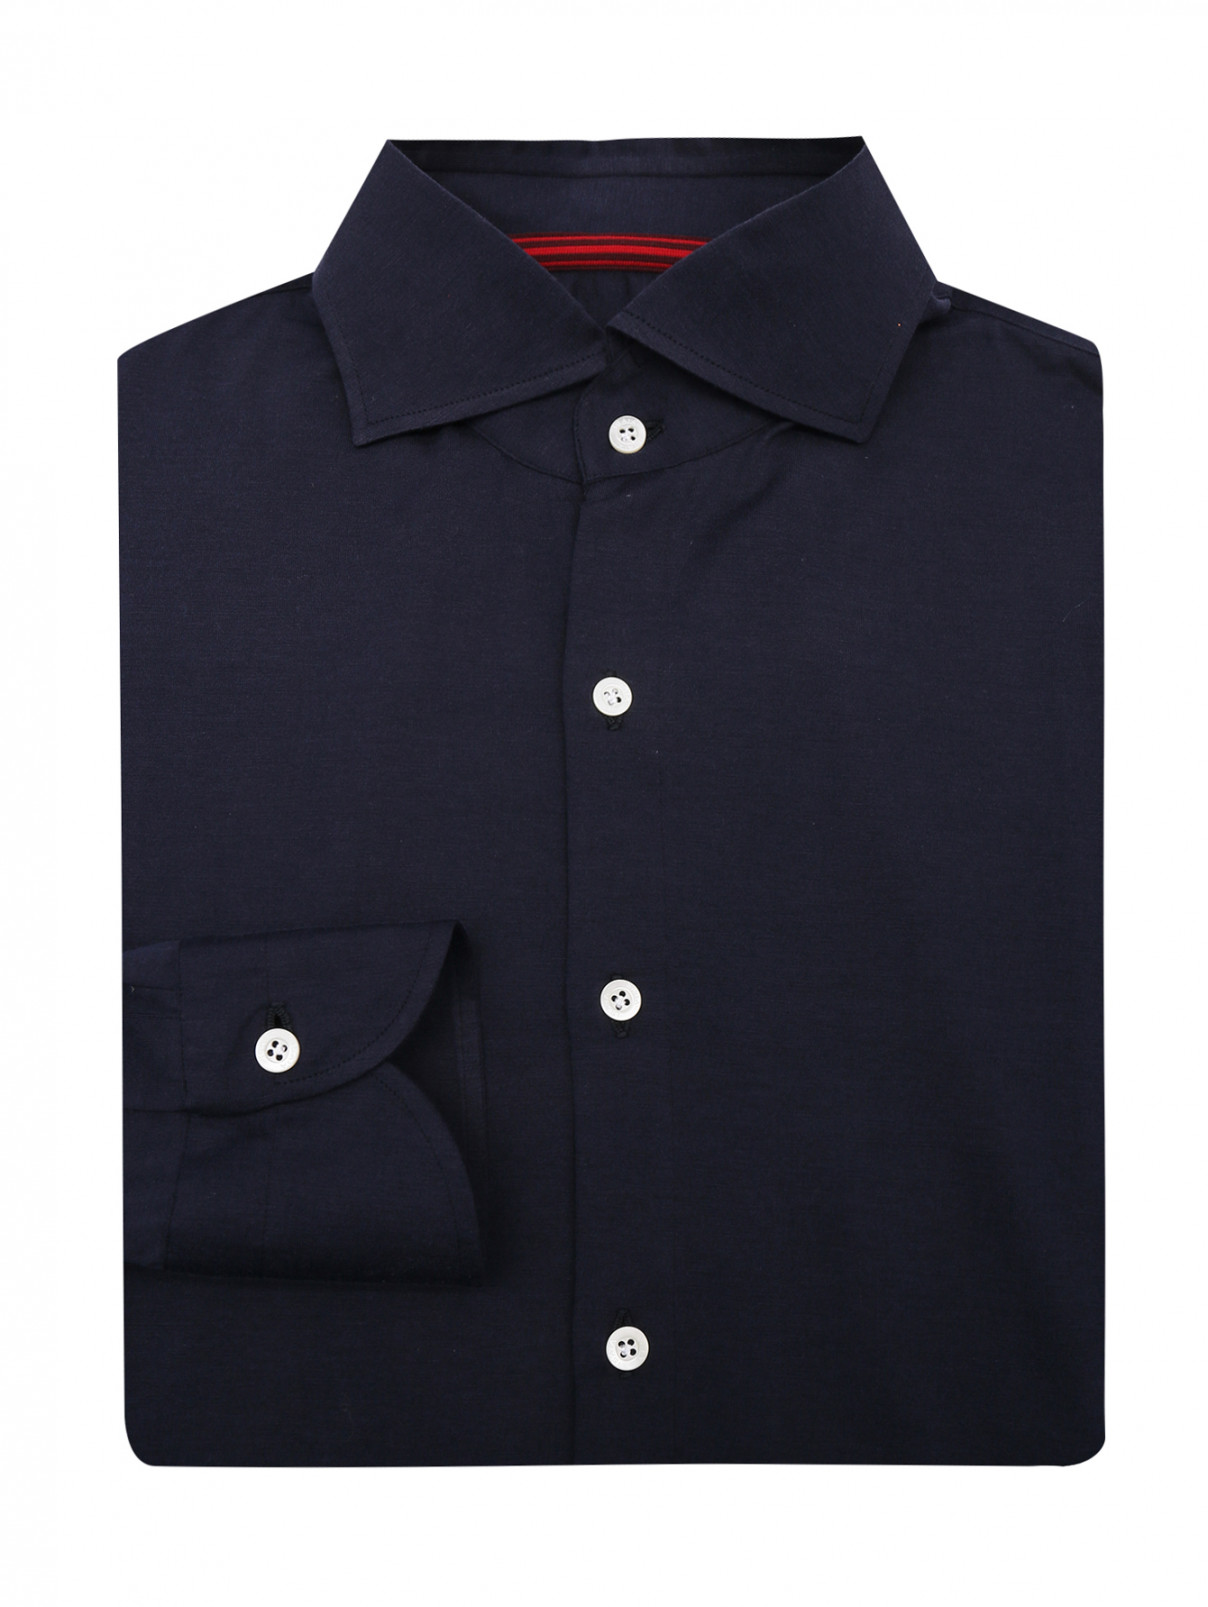 Однотонная рубашка из шелка и хлопка Isaia  –  Общий вид  – Цвет:  Синий